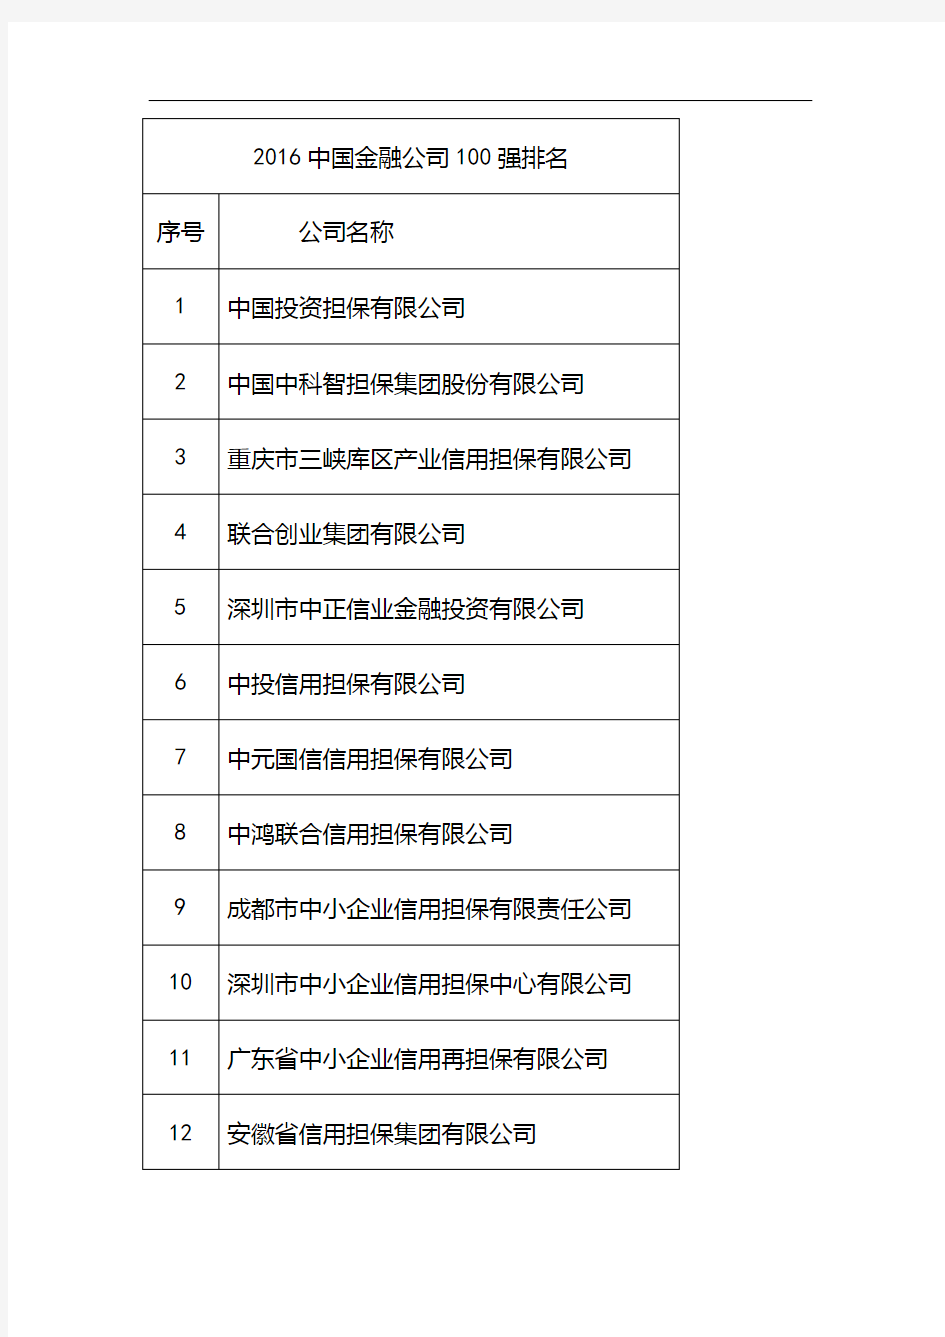 2016中国金融公司100强排名